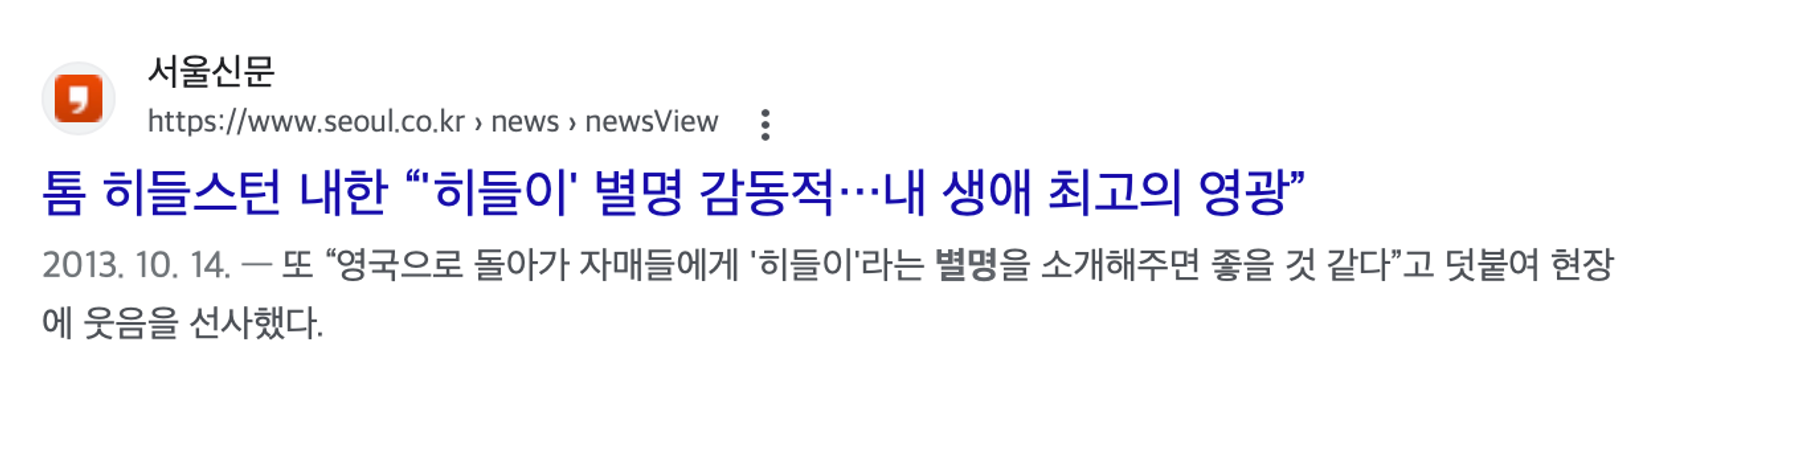 이미지 = 구글 검색 결과 캡처(https://www.seoul.co.kr/news/2013/10/14/20131014500078)